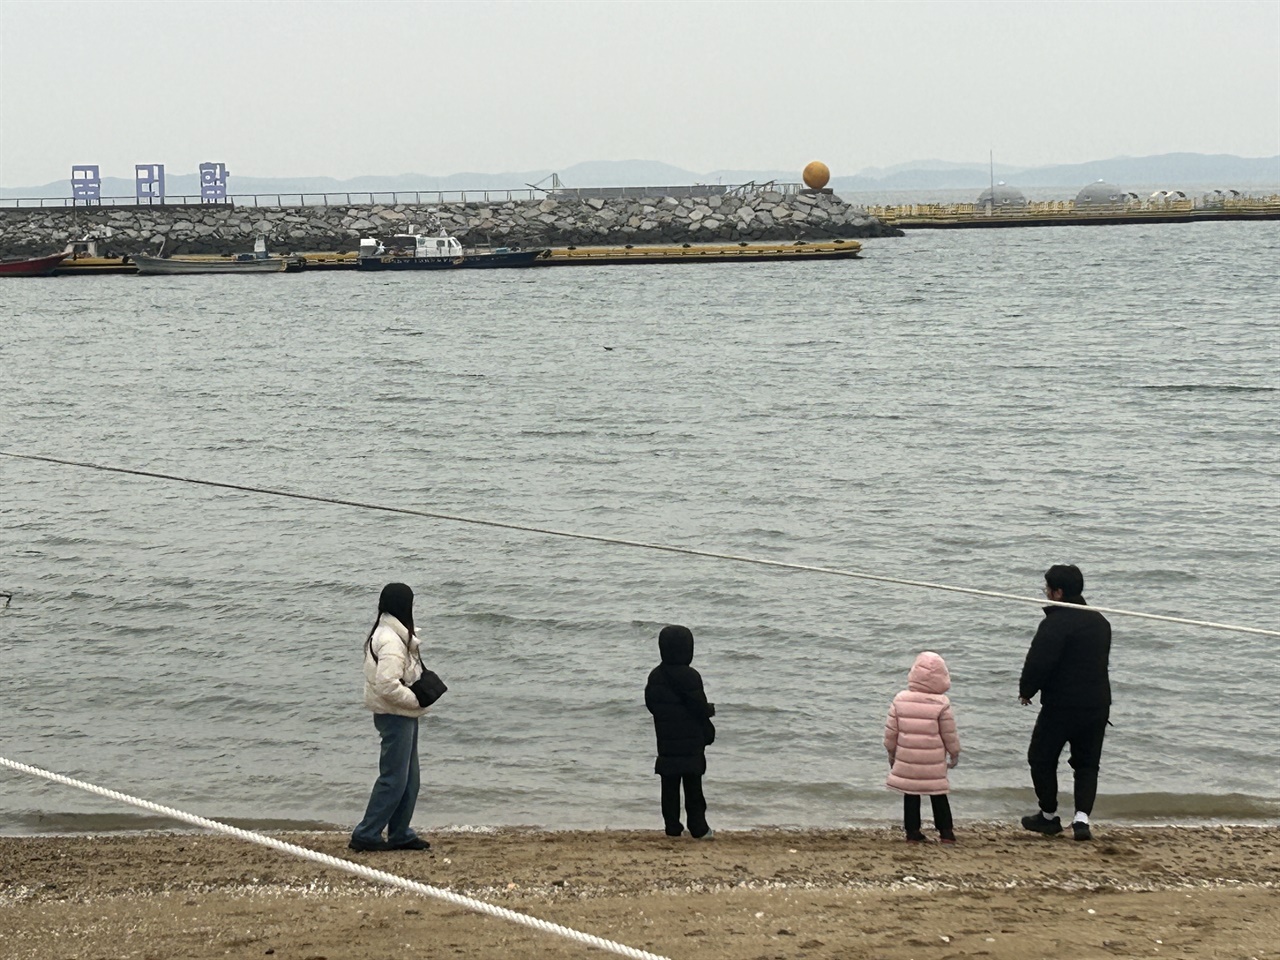  해넘이를 보기 위해 홍성 서부 궁리포구를 찾은 가족들이 바다를 바라보고 있다. 궁리포구를 비롯해 서해안 대부분은 흐린 날씨로 해넘이를 볼 수 없었다. 